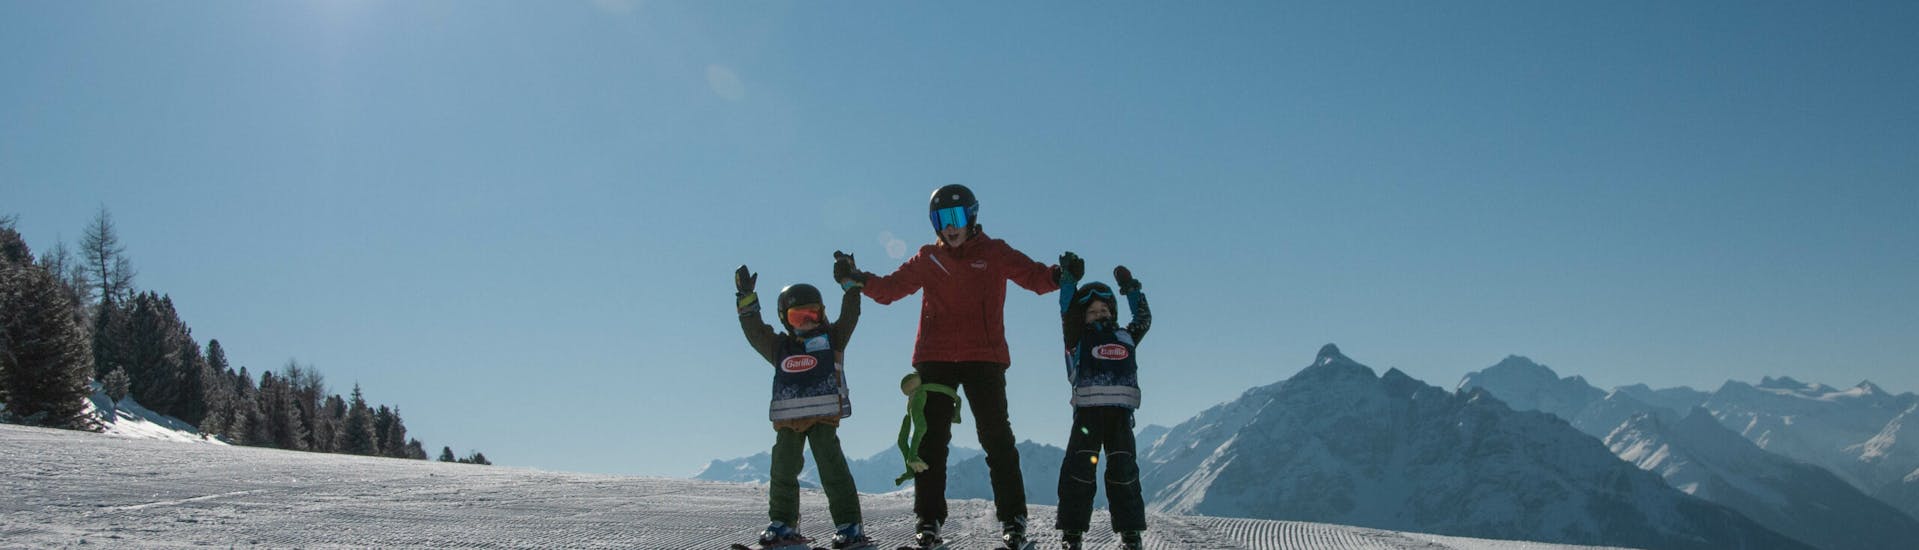 Lezioni private di sci per bambini con esperienza con Ski- & Snowboardschule Innsbruck.